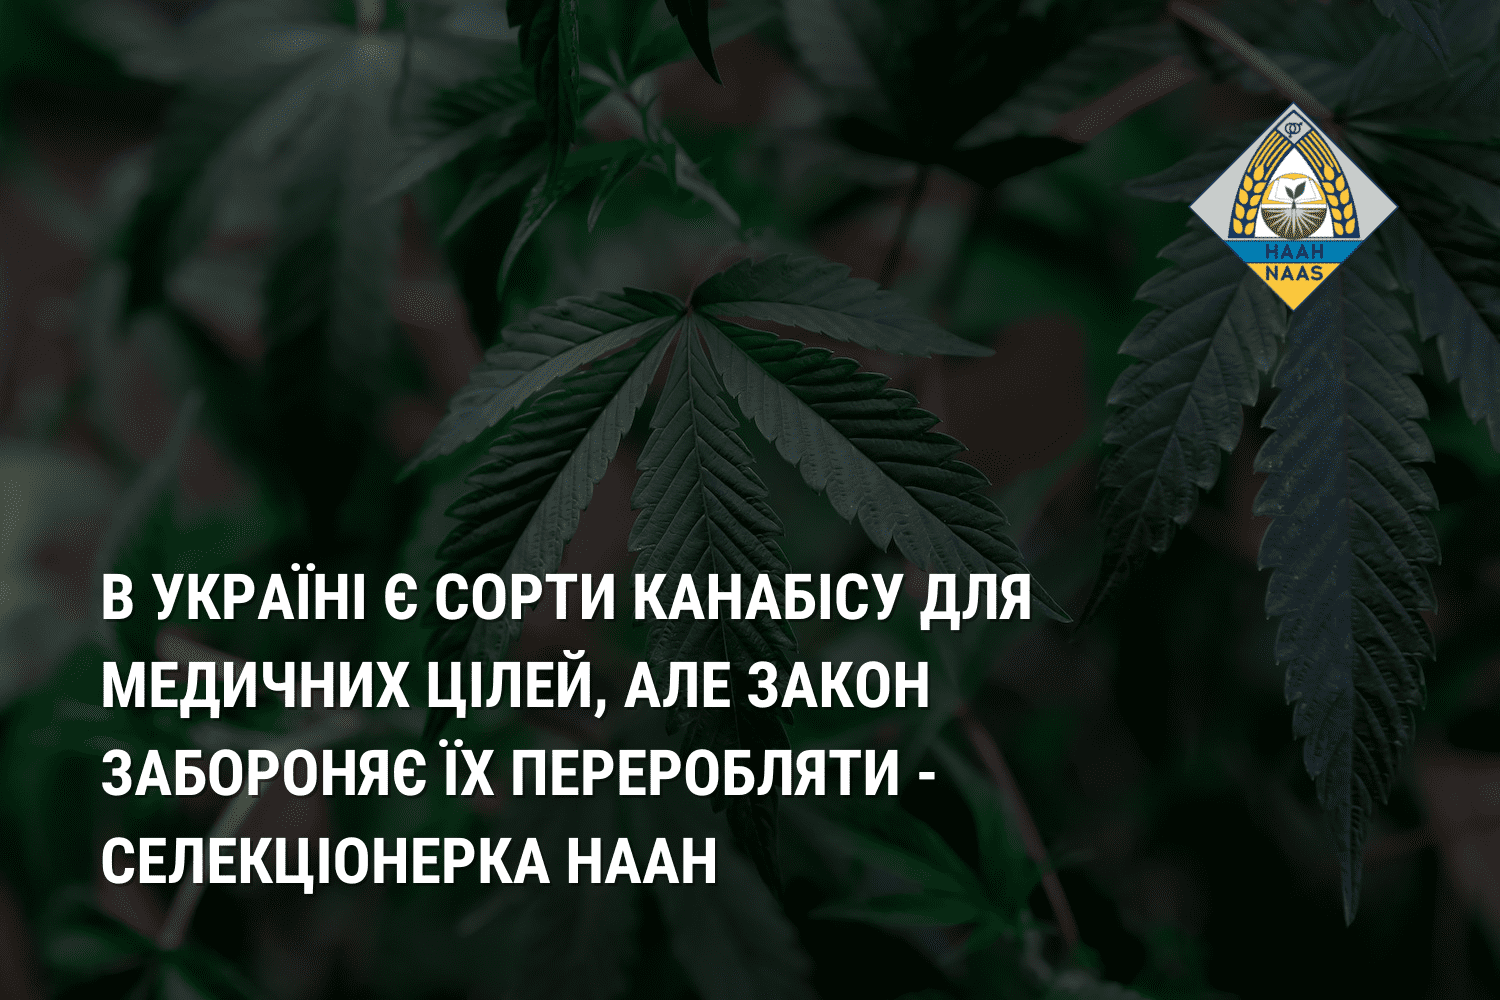 В Україні є сорти канабісу для медичних цілей, але закон забороняє їх переробляти - селекціонерка НААН